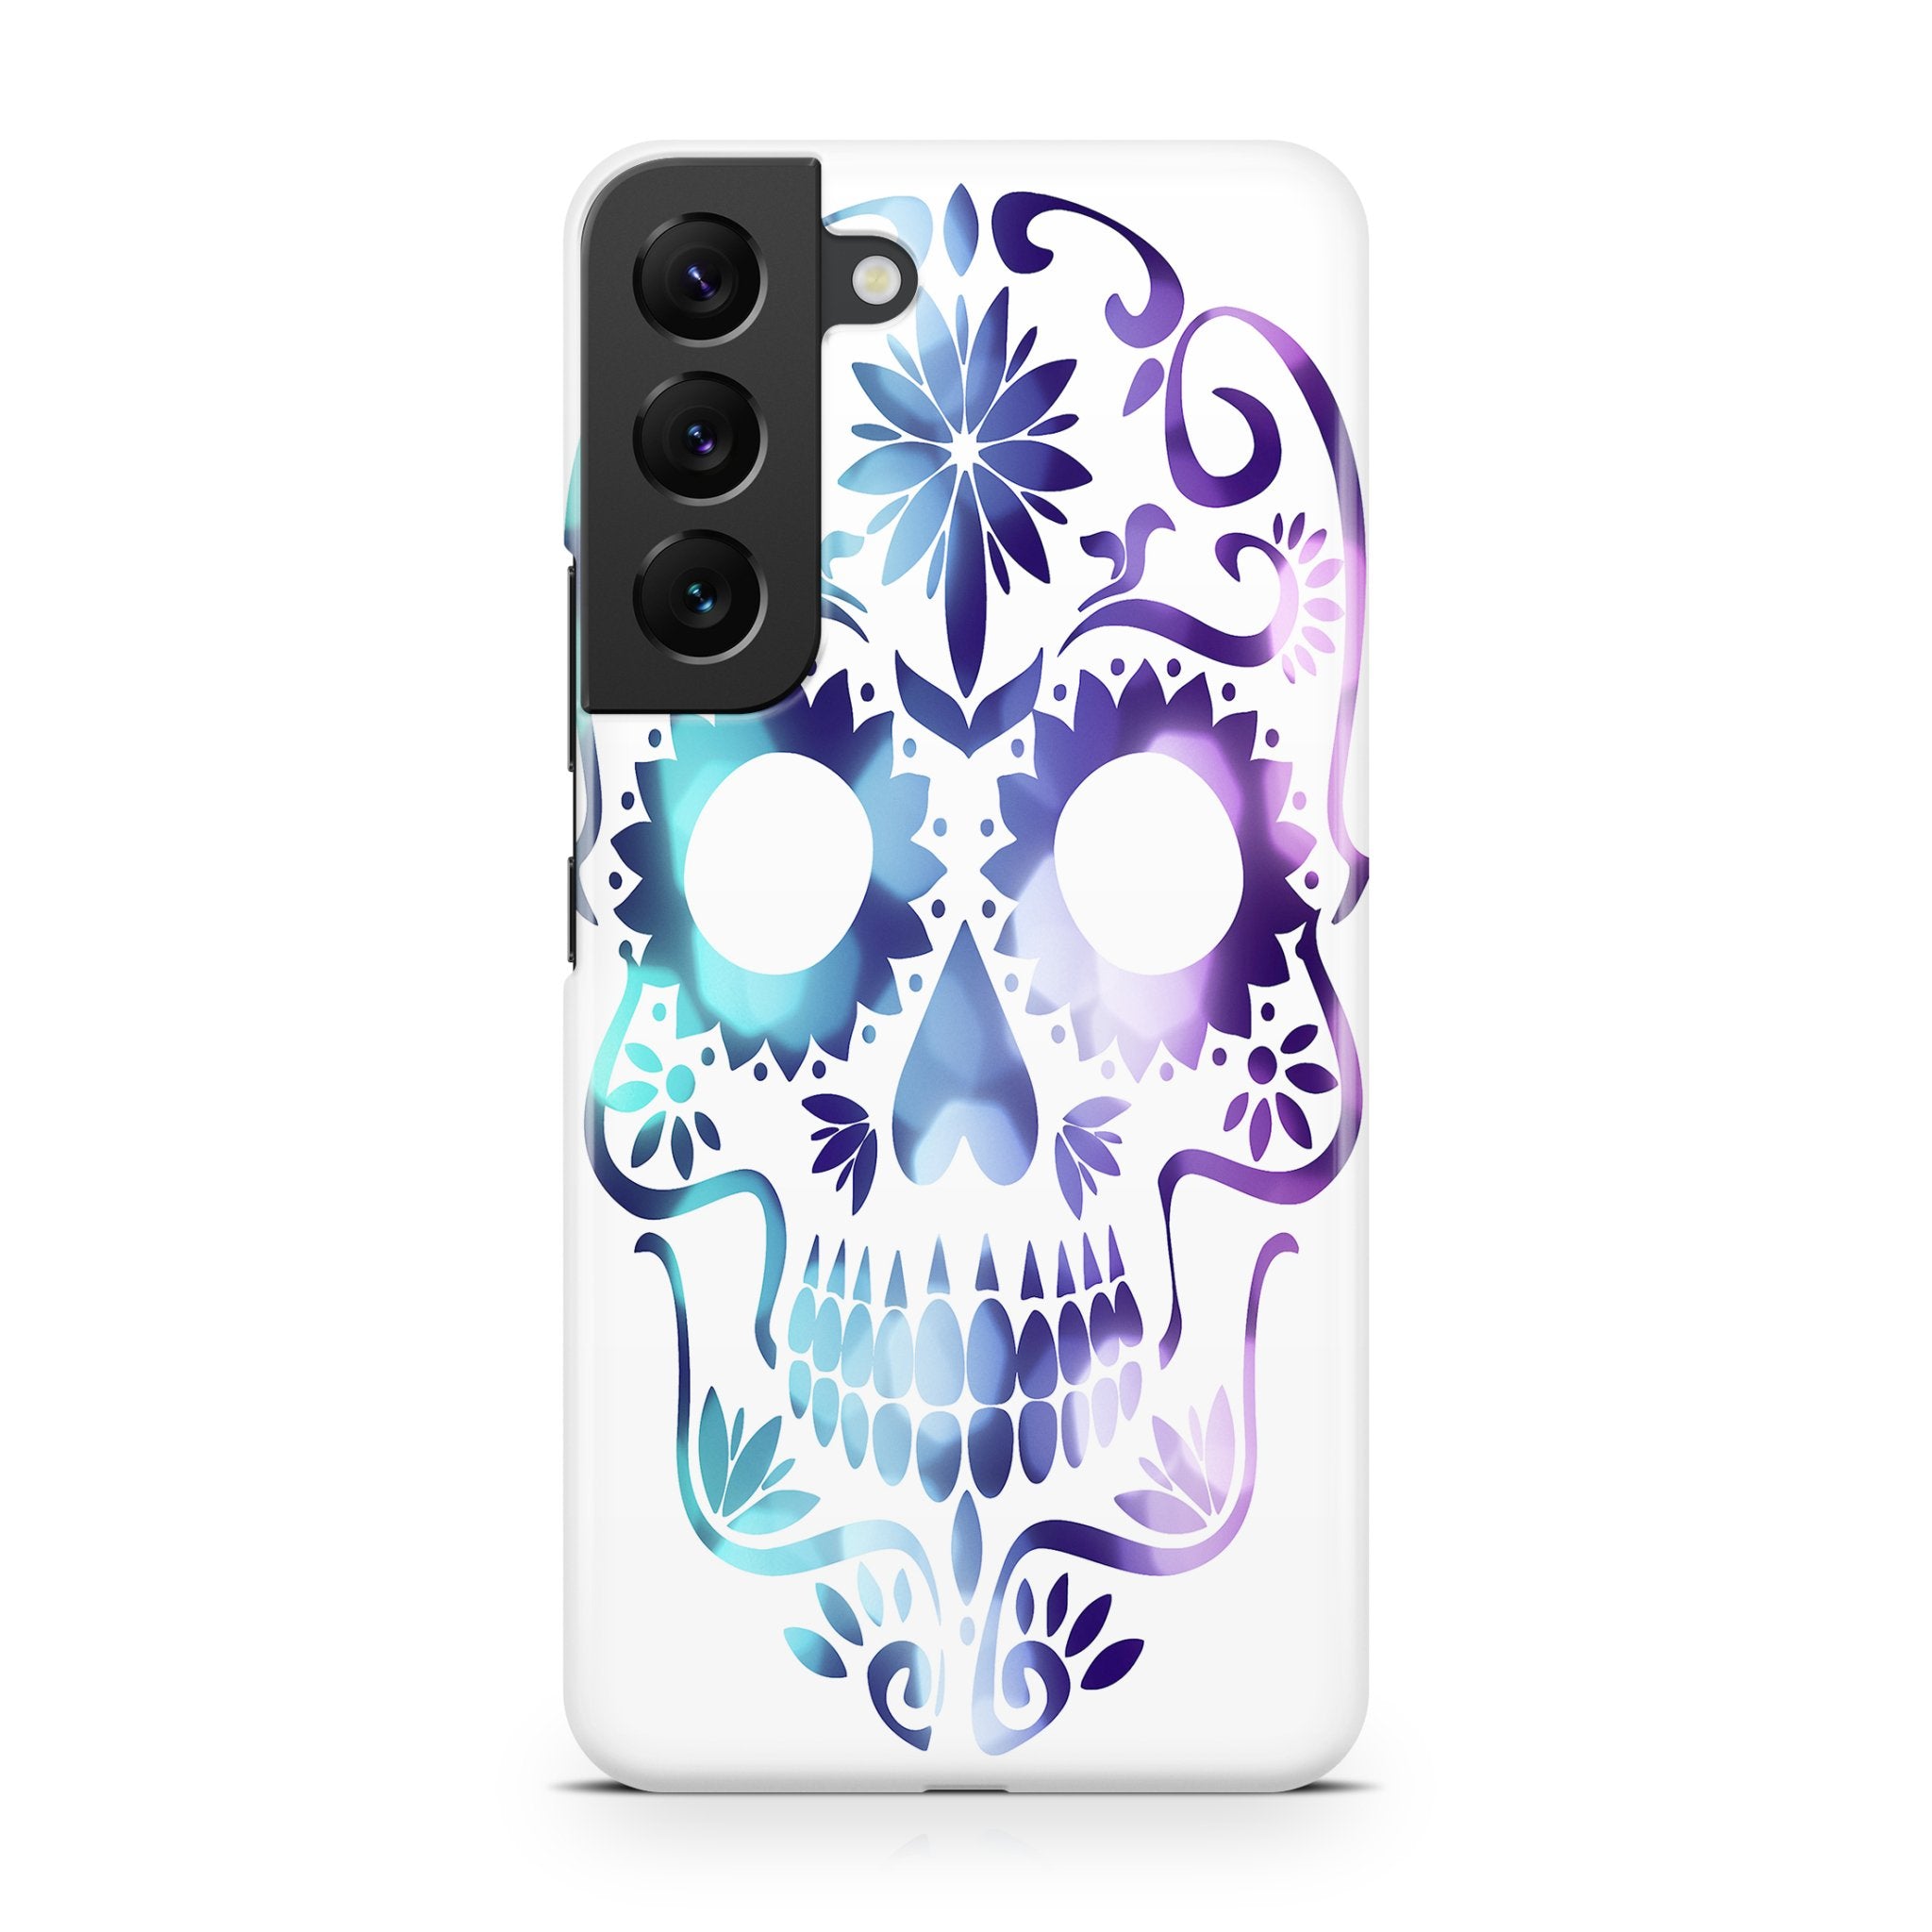 Vertex Mind - Samsung phone case designs by CaseSwagger